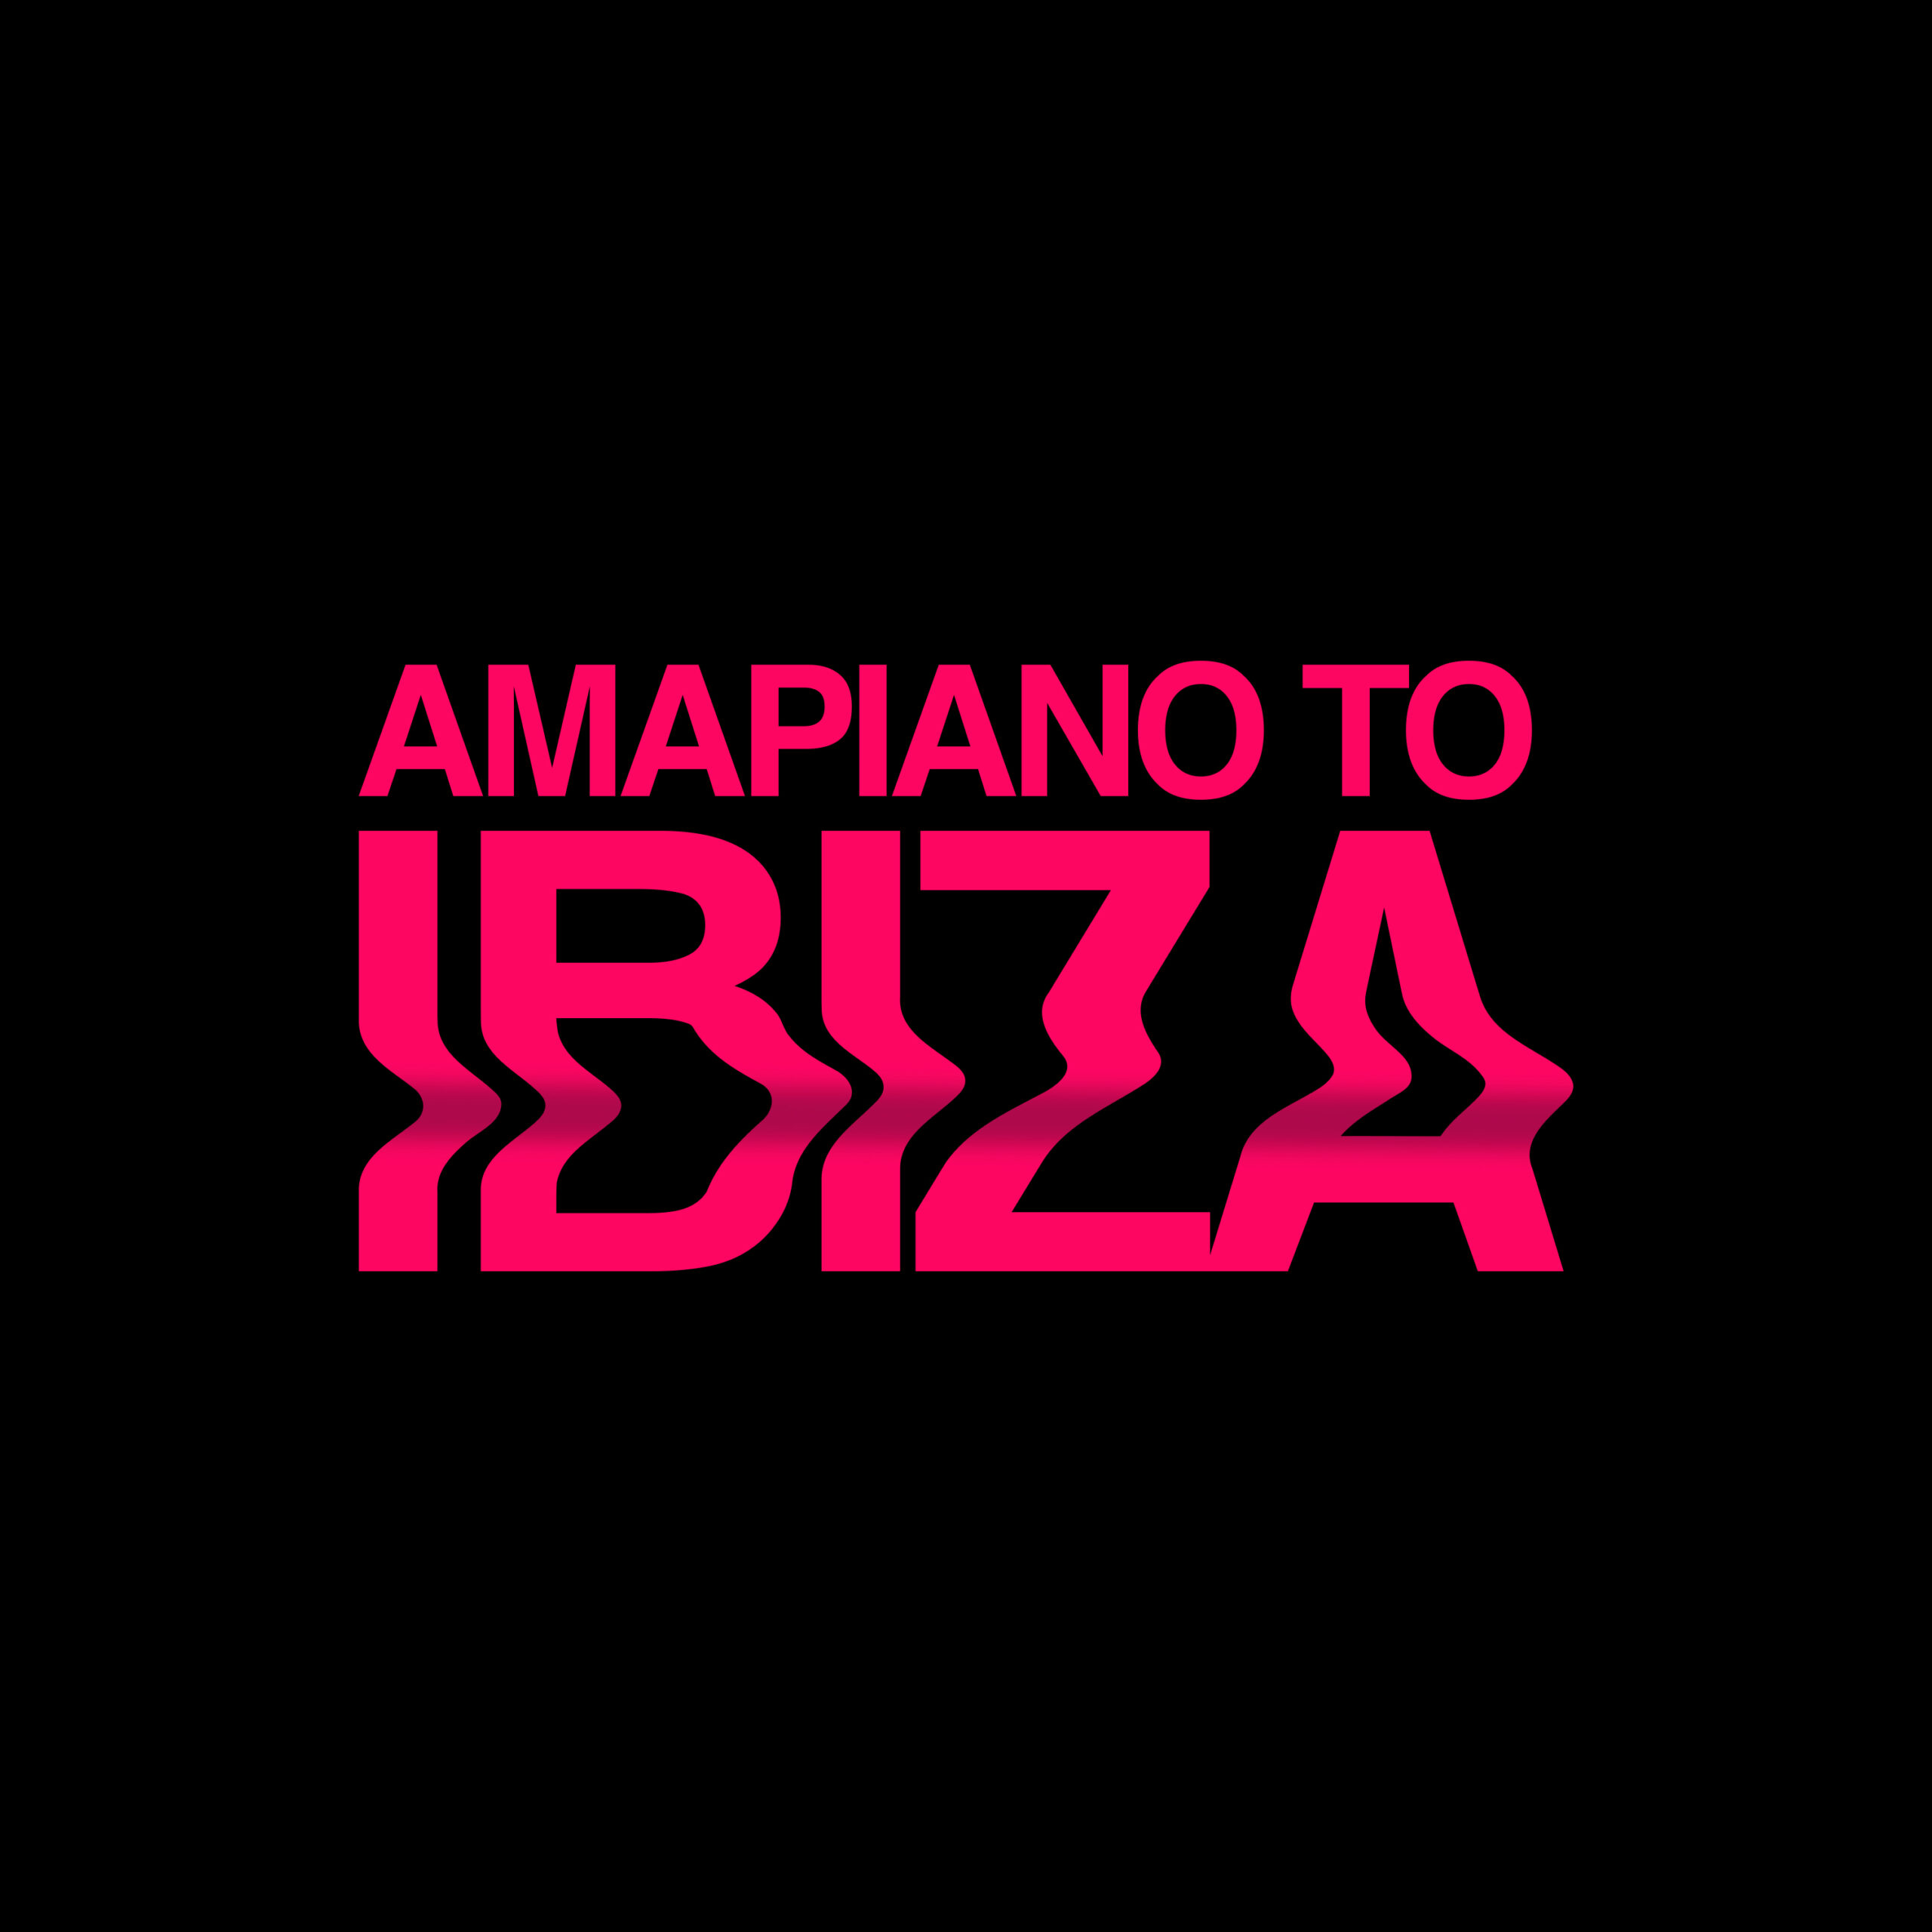 Amapiano To Ibiza artwork